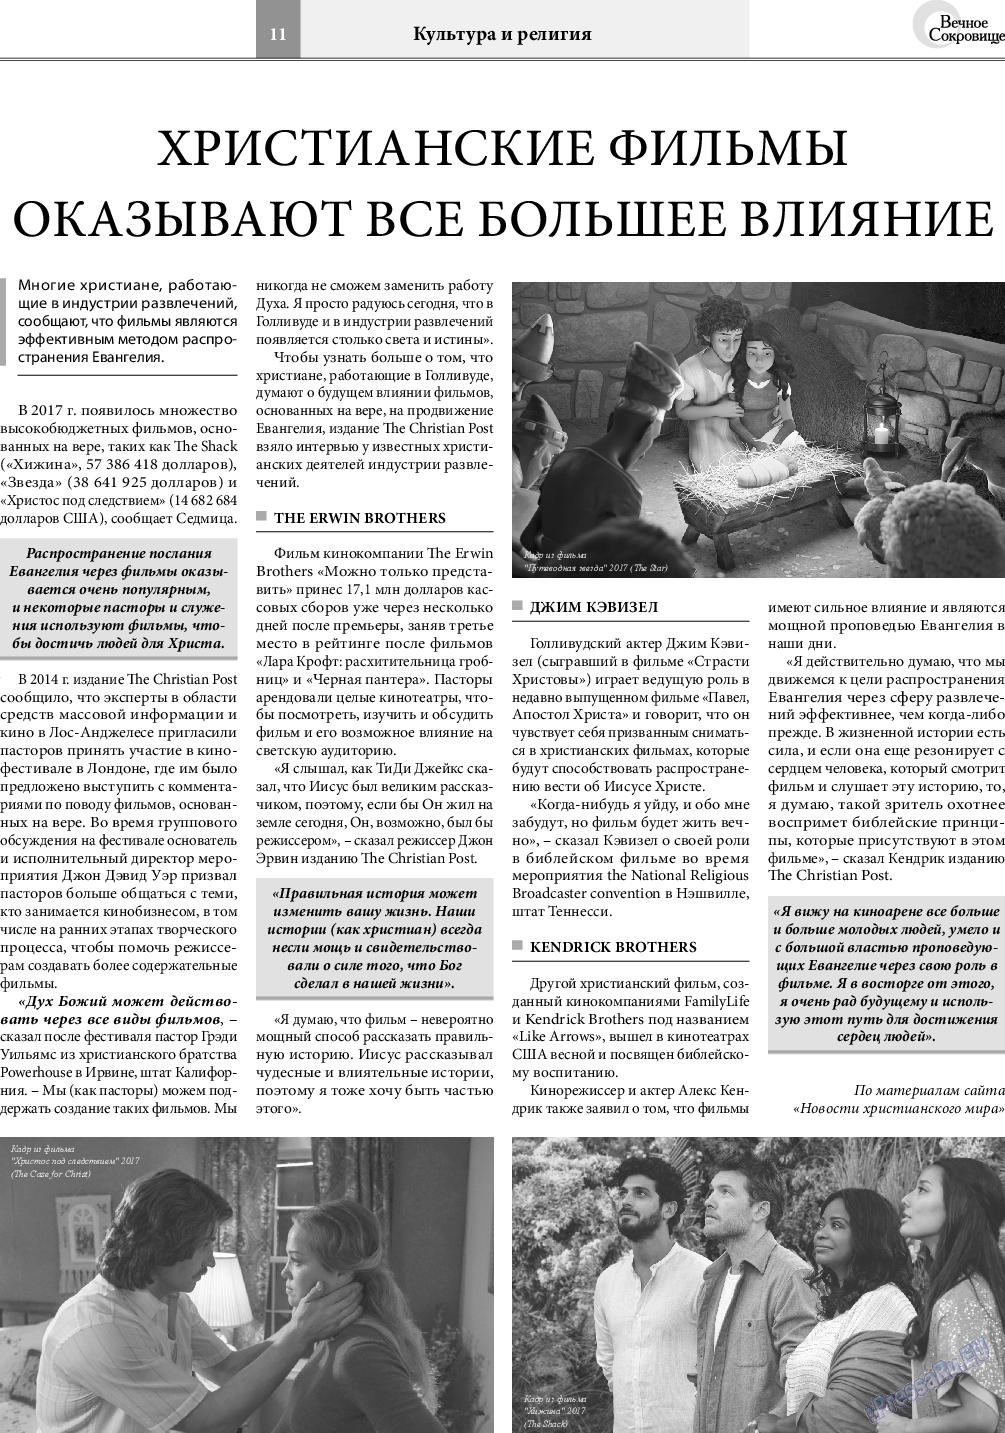 Вечное сокровище, газета. 2018 №3 стр.11